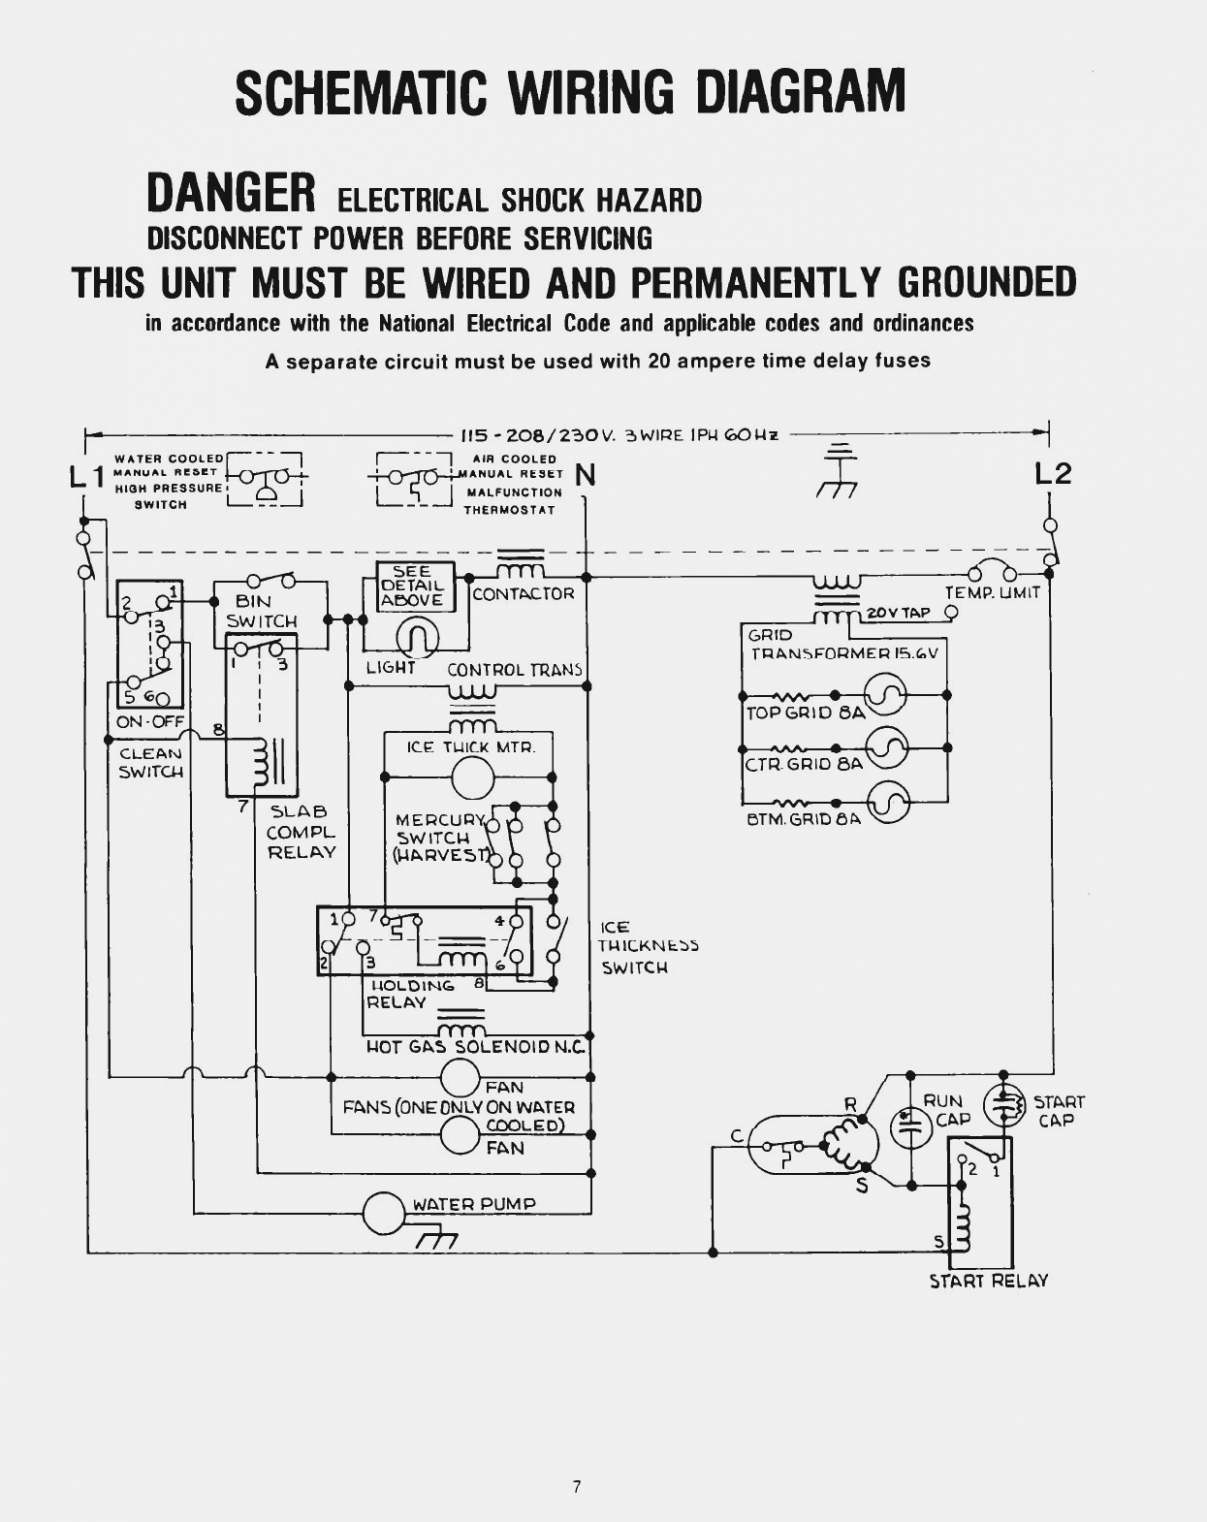 Refrigerator Wiring Diagram Pdf | Wiring Diagram - Refrigerator Wiring Diagram Pdf